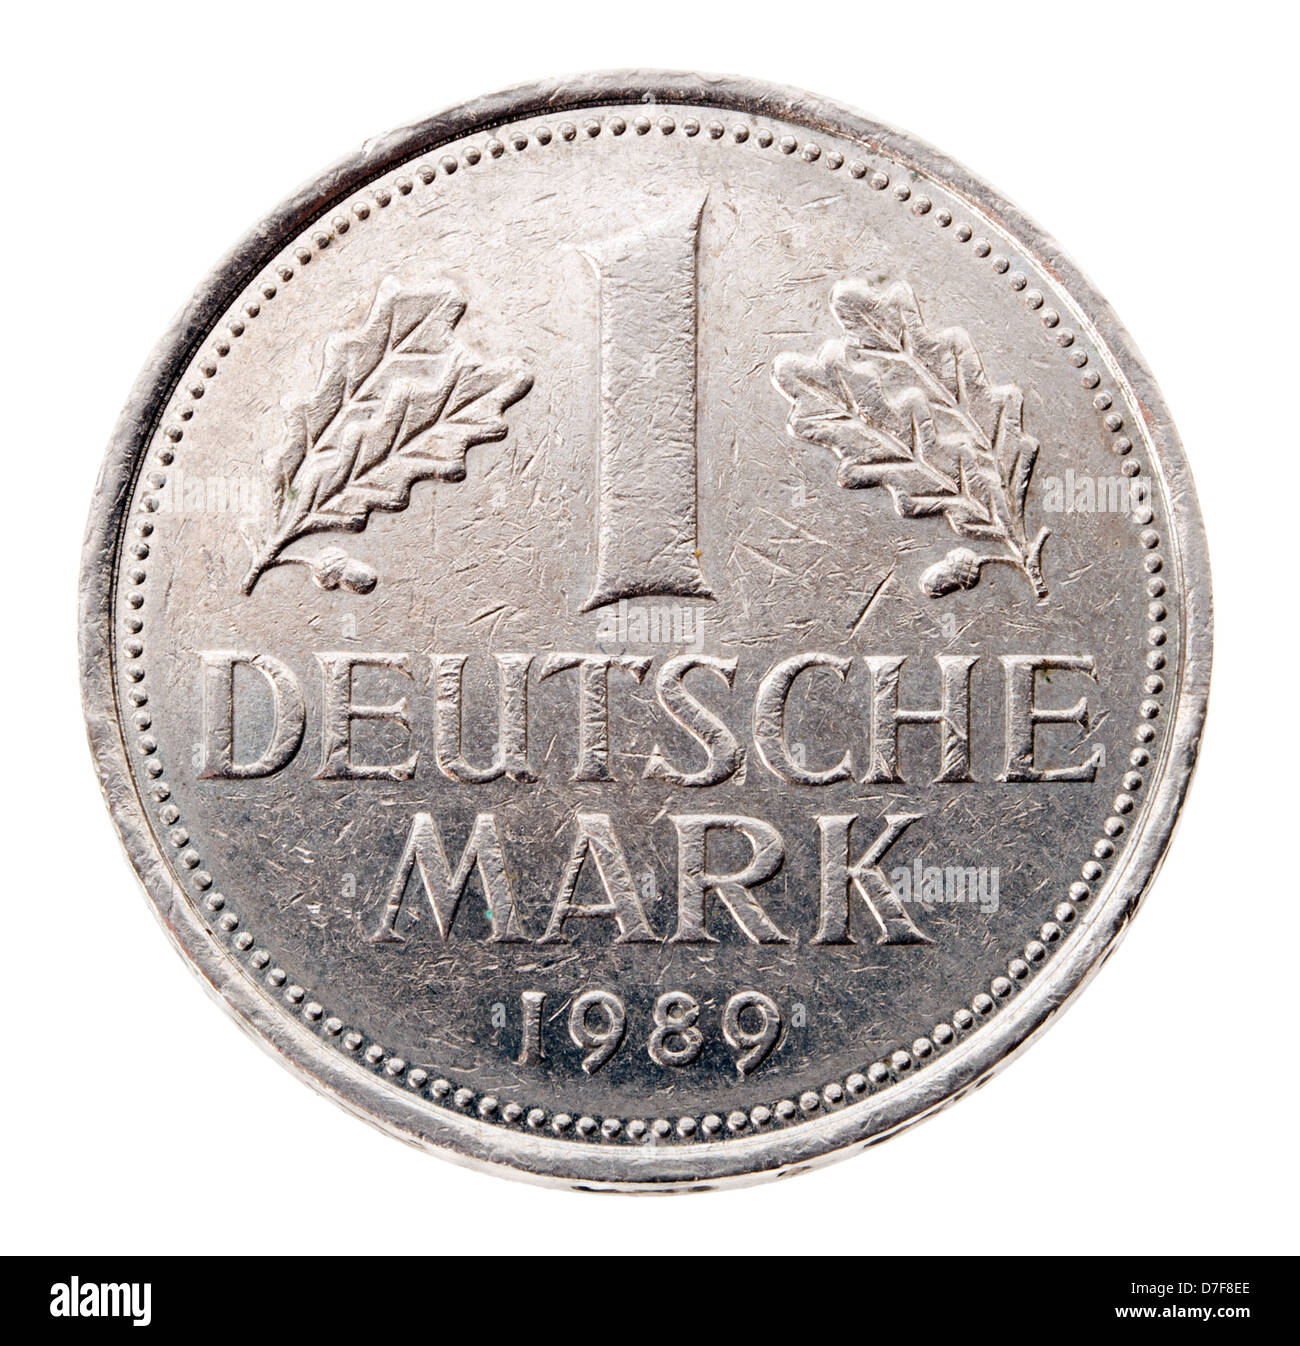 1 deutsche mark -Fotos und -Bildmaterial in hoher Auflösung – Alamy